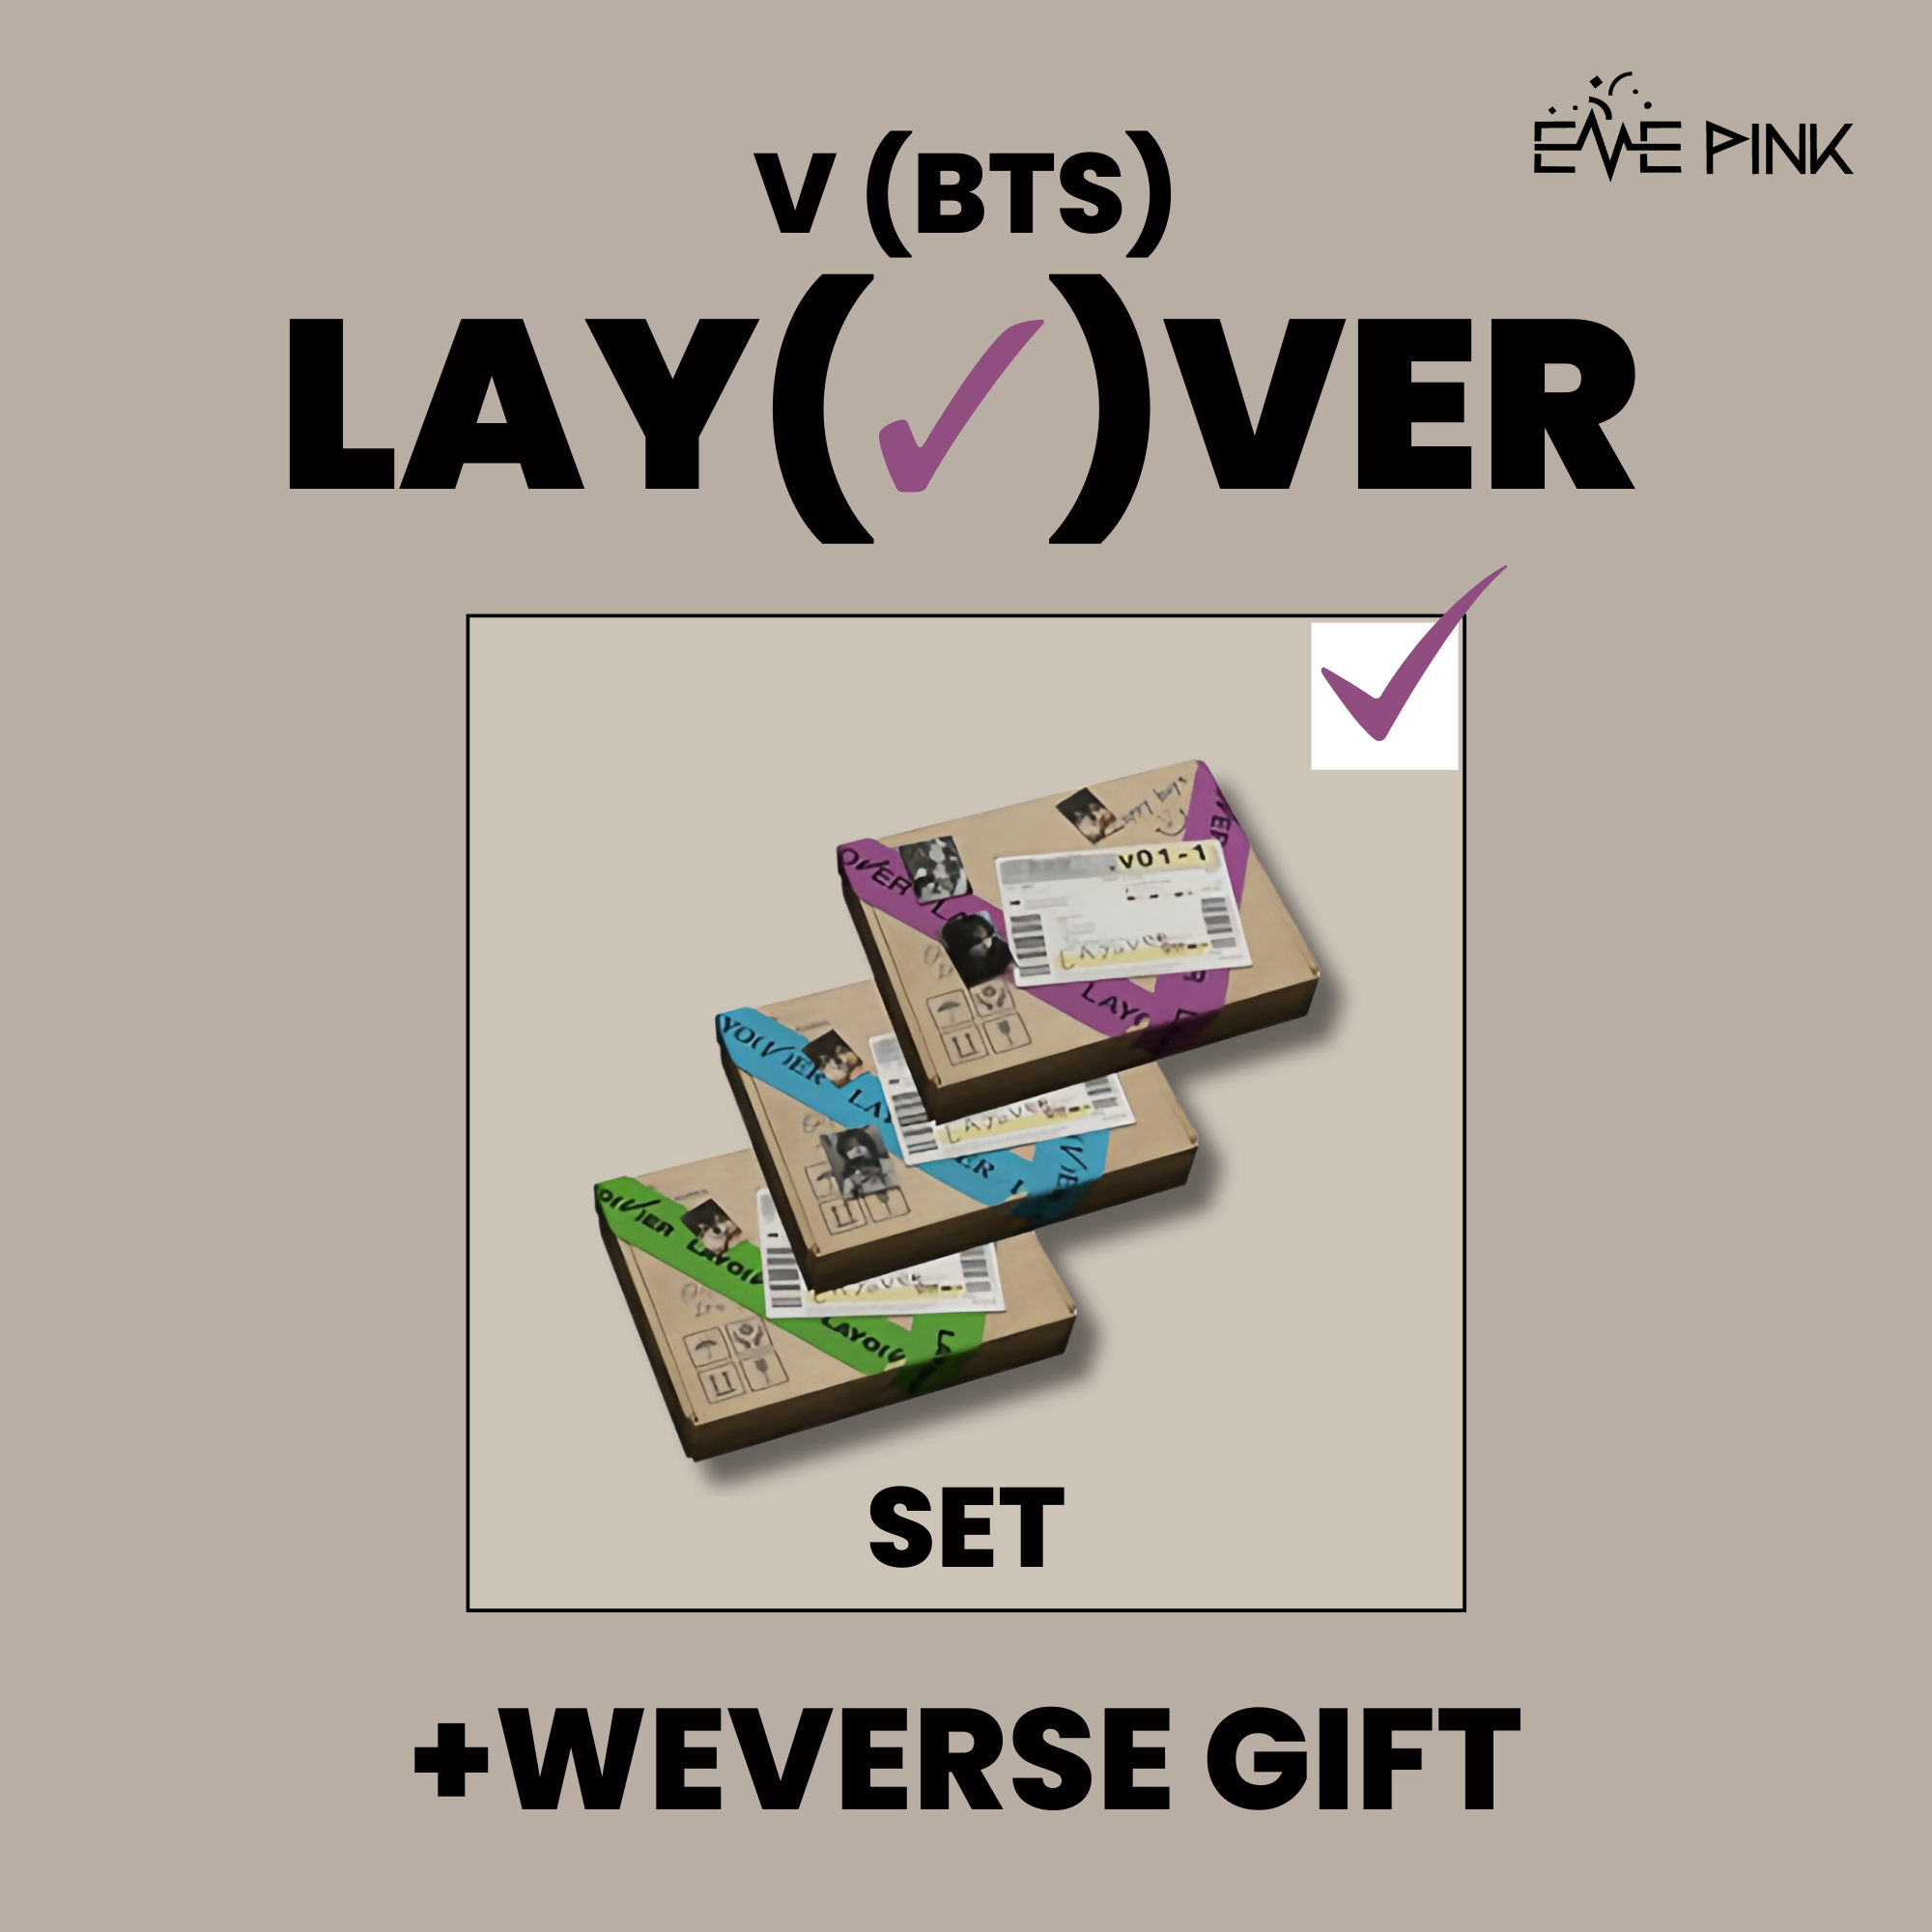 V (BTS) ALBUM - [Layover] (+ WEVERSE GIFT) – EVE PINK K-POP